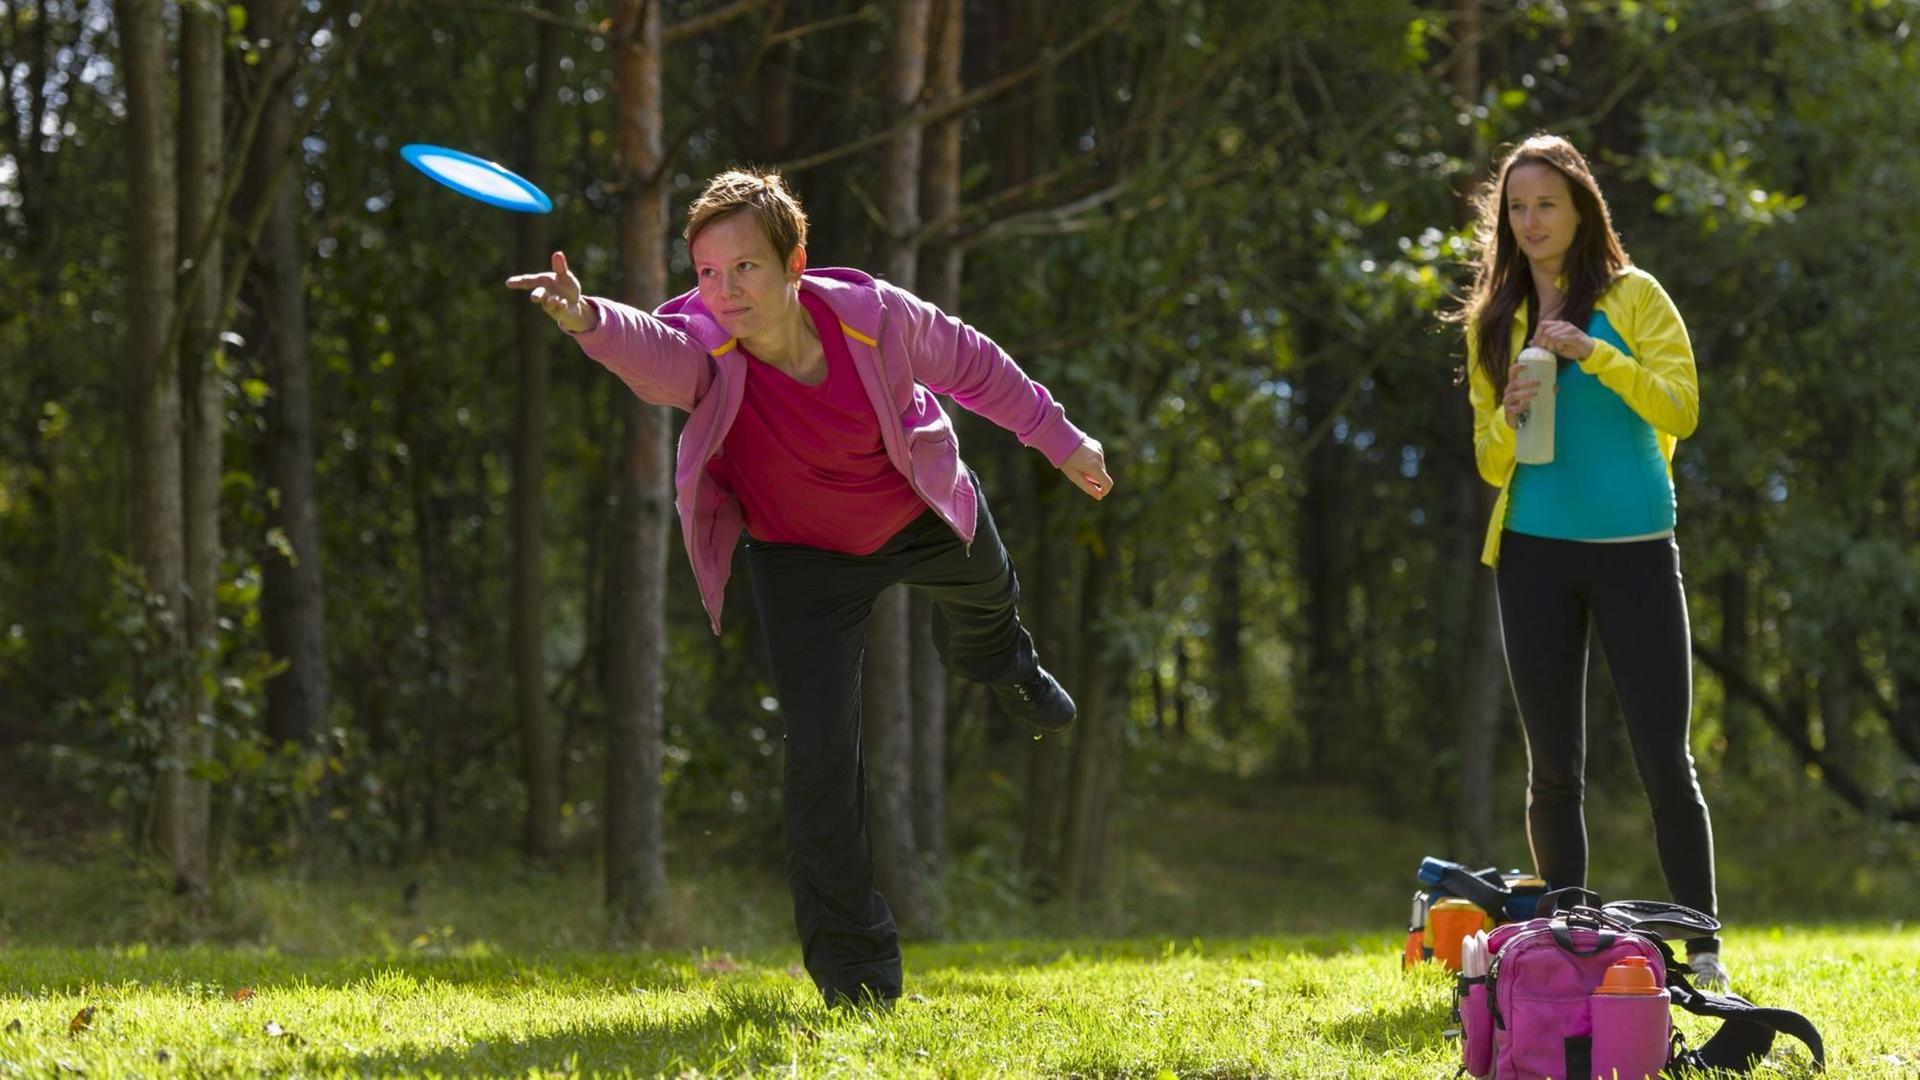 Zwei junge Frauen spielen auf einer Wiese am Waldrand Frisbee.